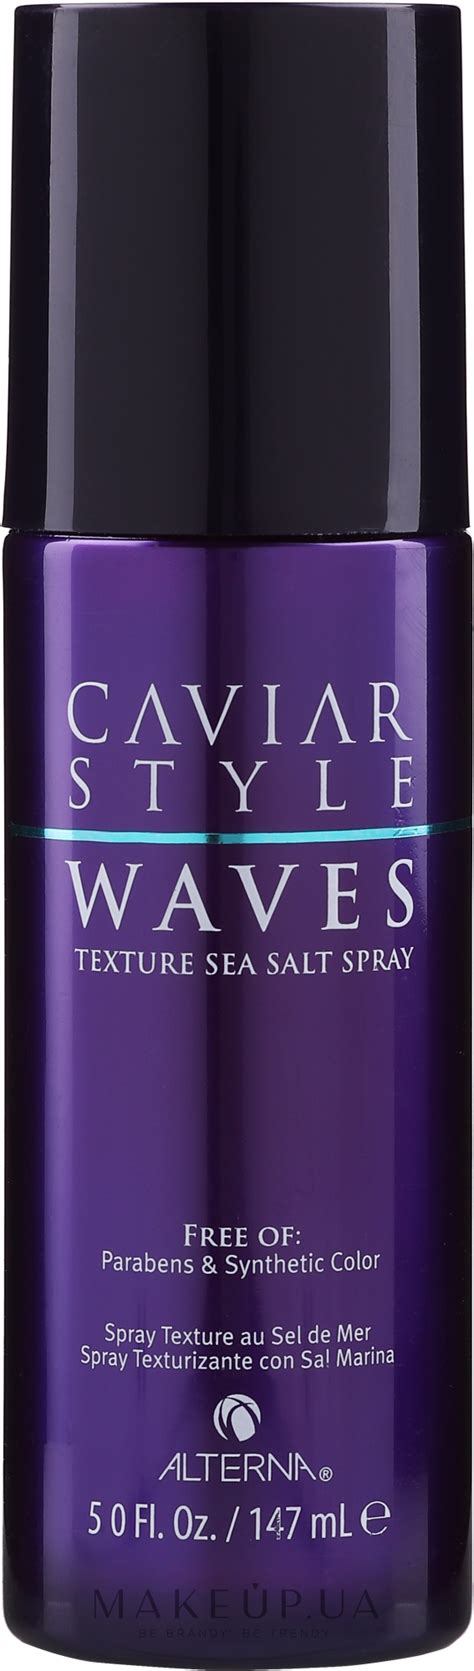 Alterna Caviar Style Texture Sea Salt Spray